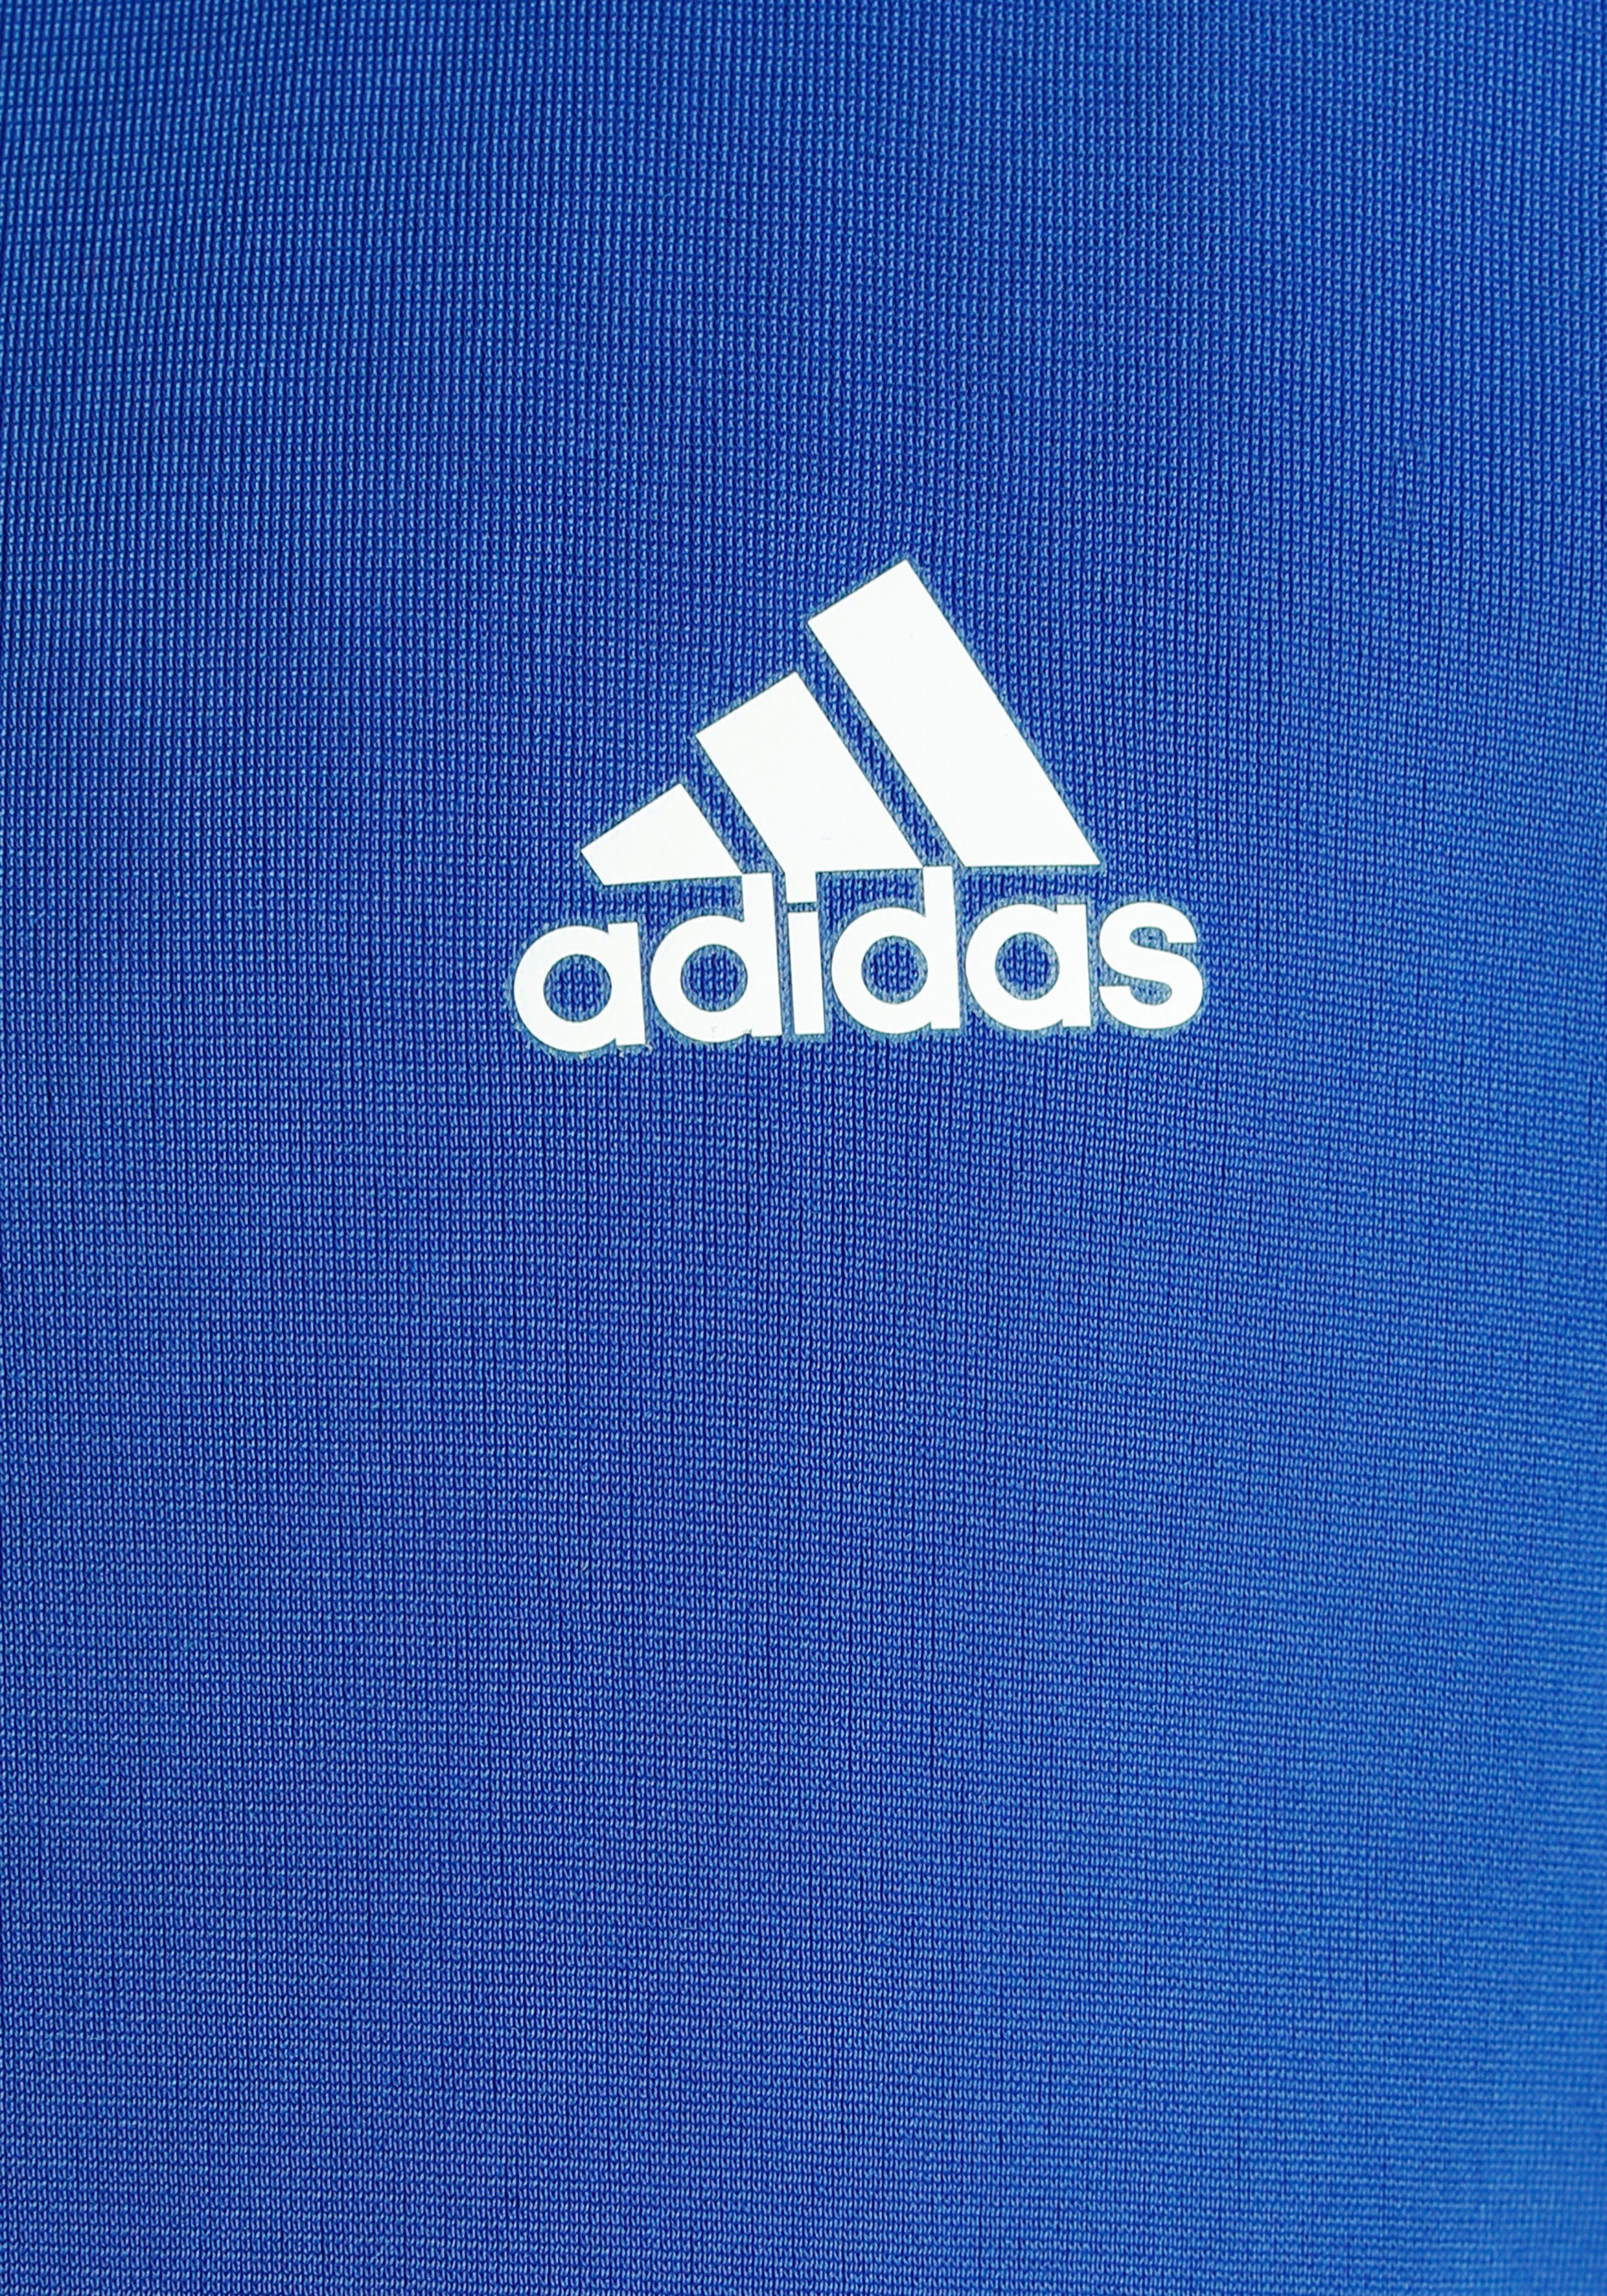 LOGO adidas / Semi White (2-tlg) ESSENTIALS BIG Lucid Trainingsanzug Sportswear Blue